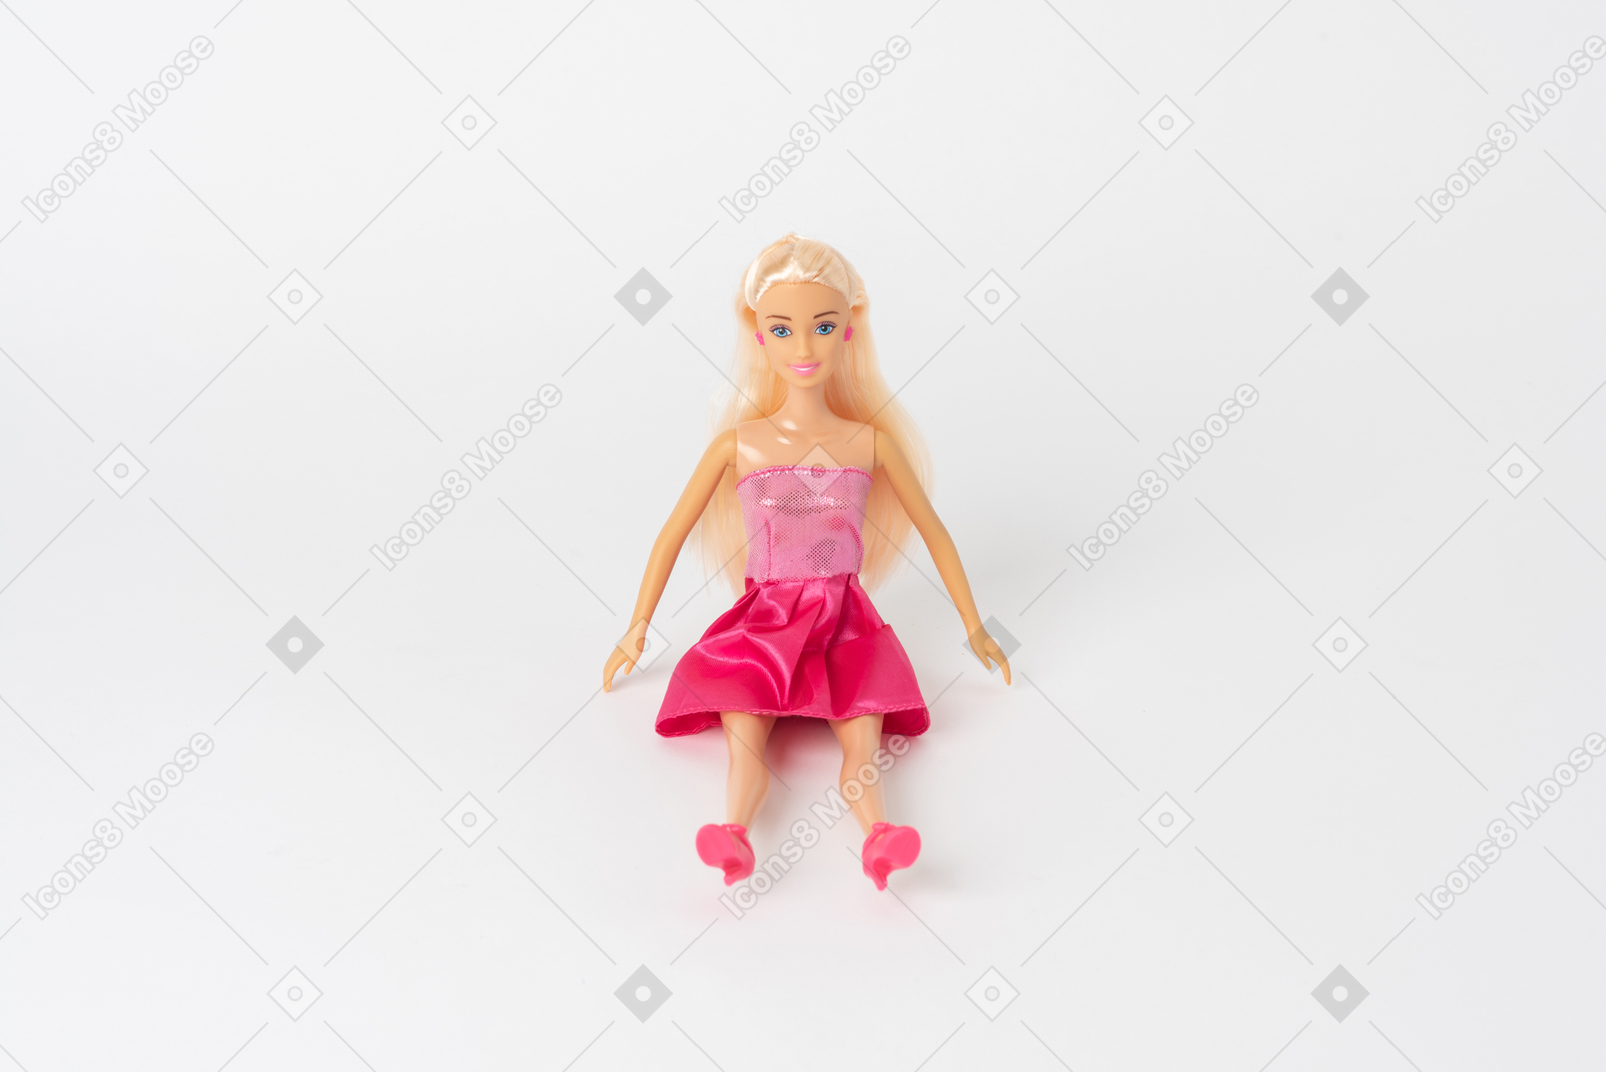 Une belle poupée barbie vêtue d’une robe rose brillante et de hauts talons roses assis isolé sur un fond blanc uni